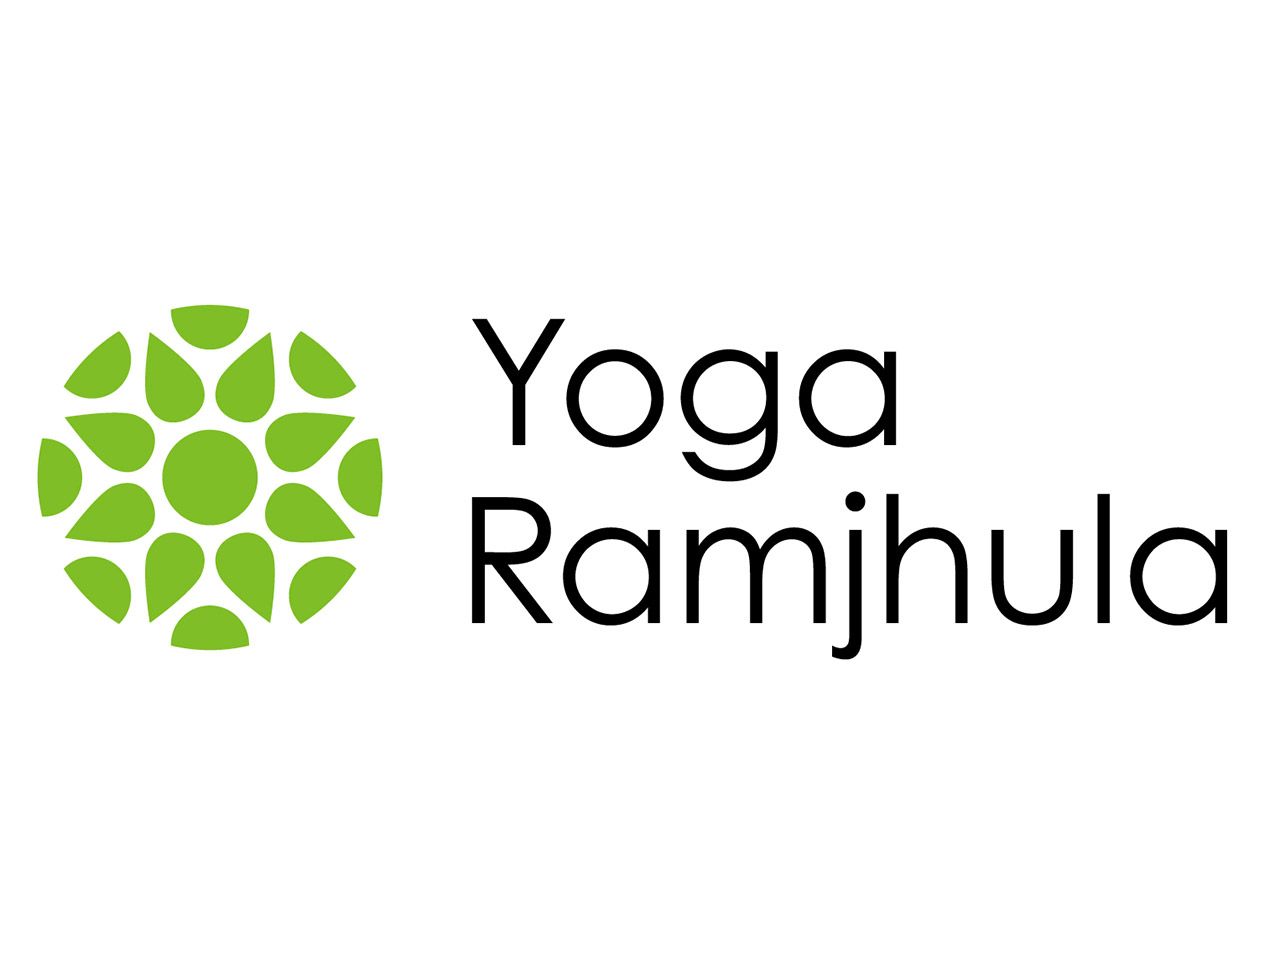 Yoga Ramjhula